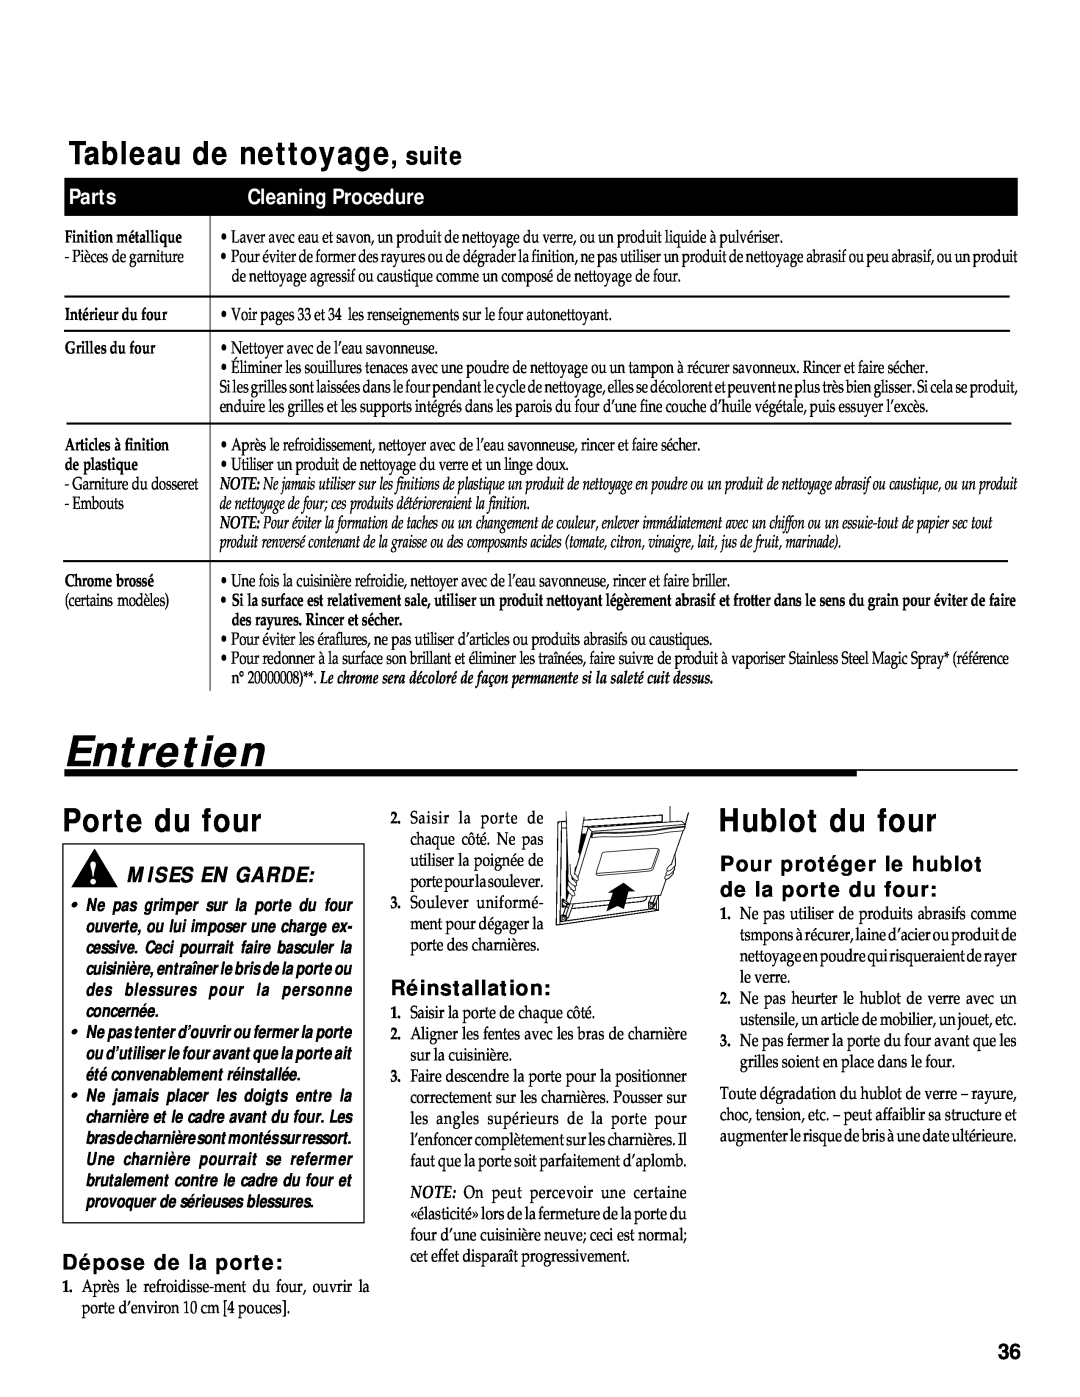 Maytag RS-1 Entretien, Tableau de nettoyage, suite, Porte du four, Hublot du four, Parts, Cleaning Procedure, de plastique 